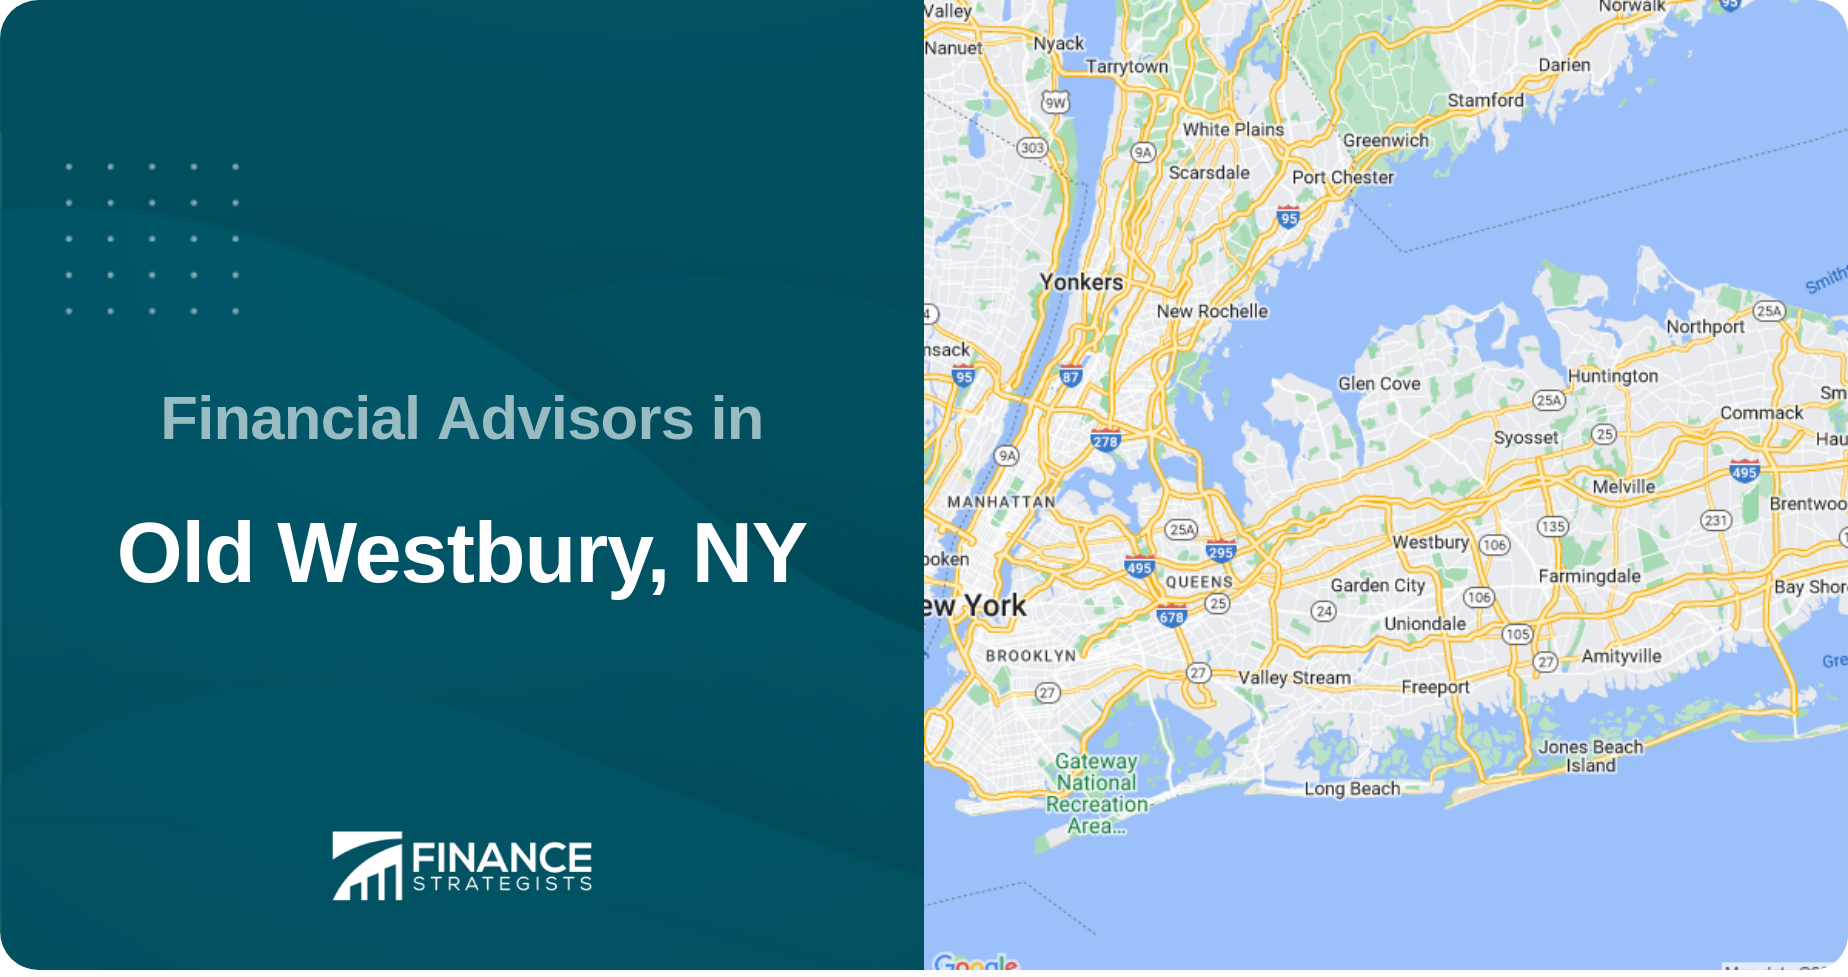 Financial Advisors in Old Westbury, NY